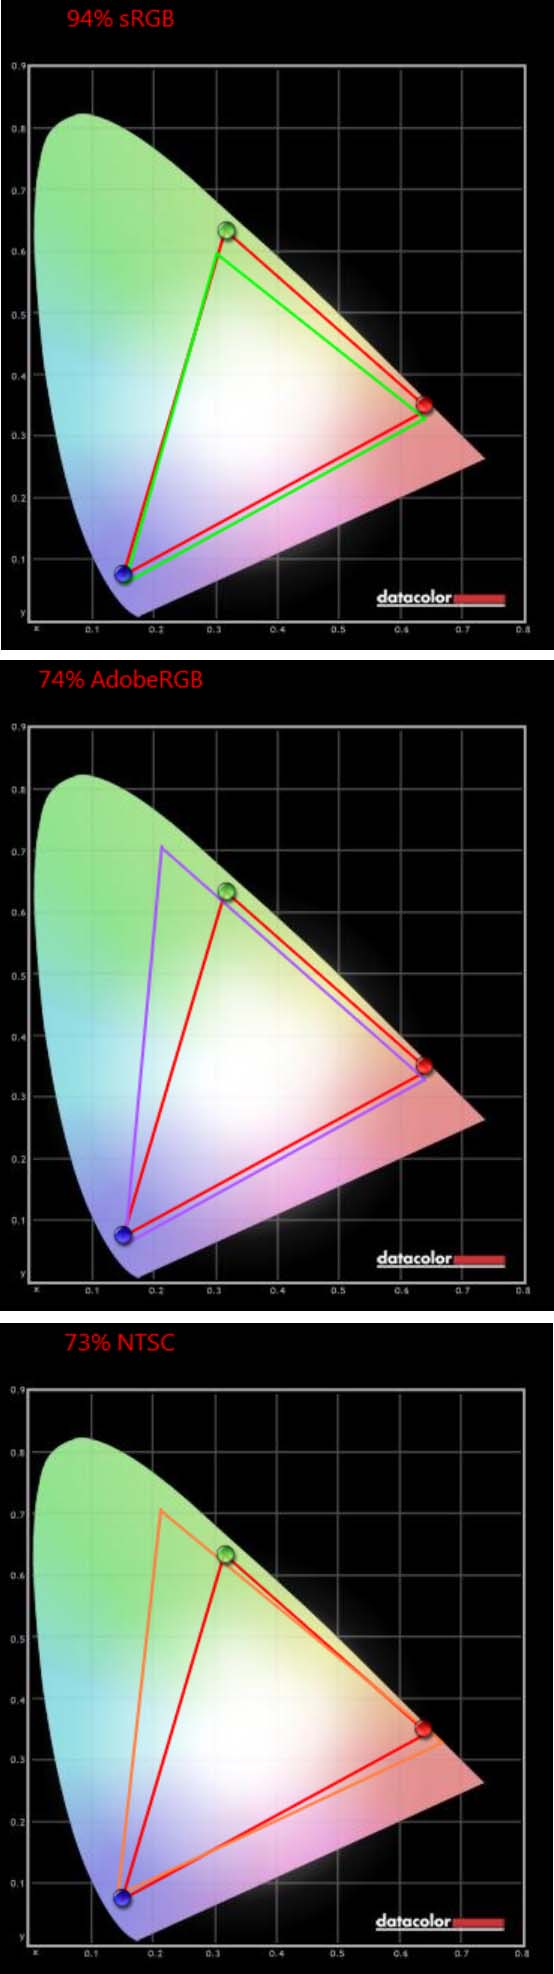 Цветовой охват монитора (показан красным  контуром) в сравнении с цветовыми пространствами sRGB, AdobeRGB и NTSC